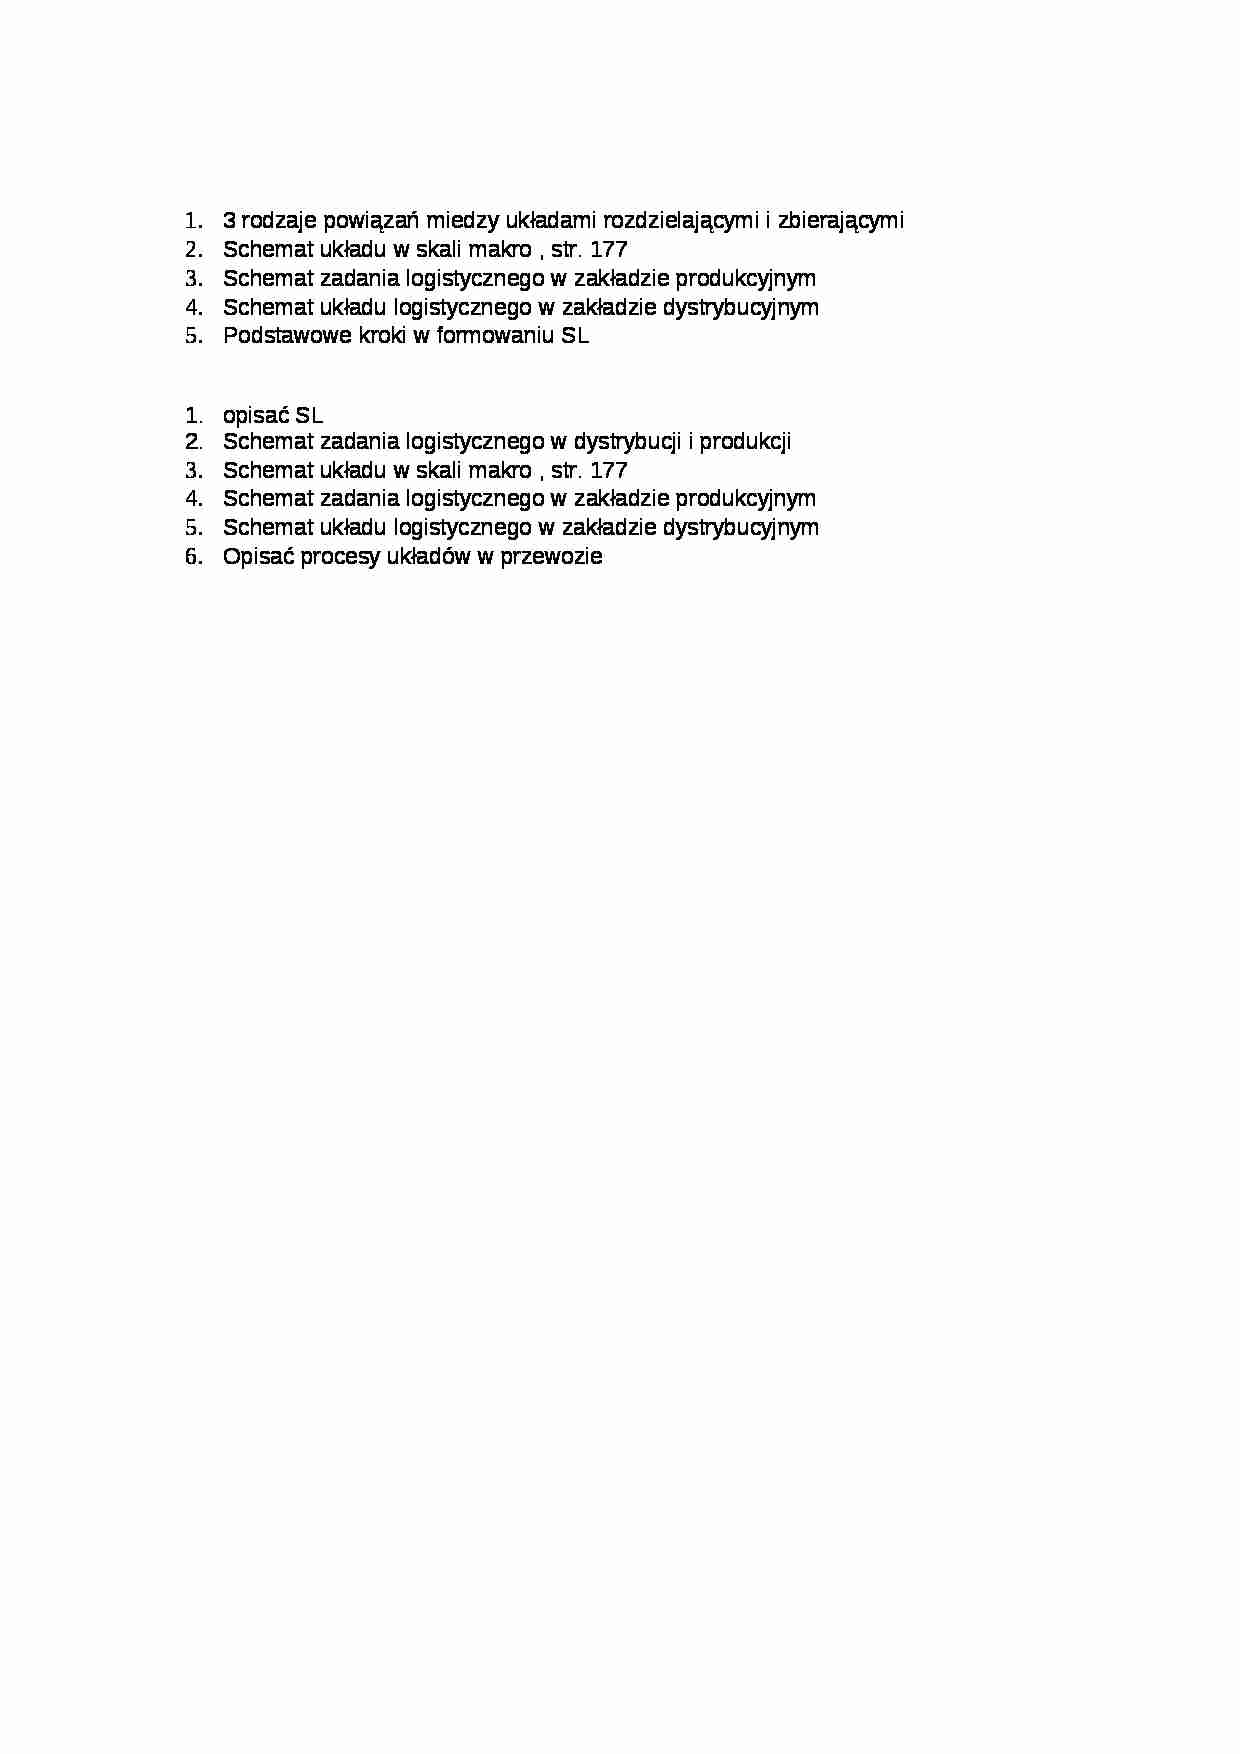 Pytania na kolokwium - Schemat układu logistycznego - strona 1